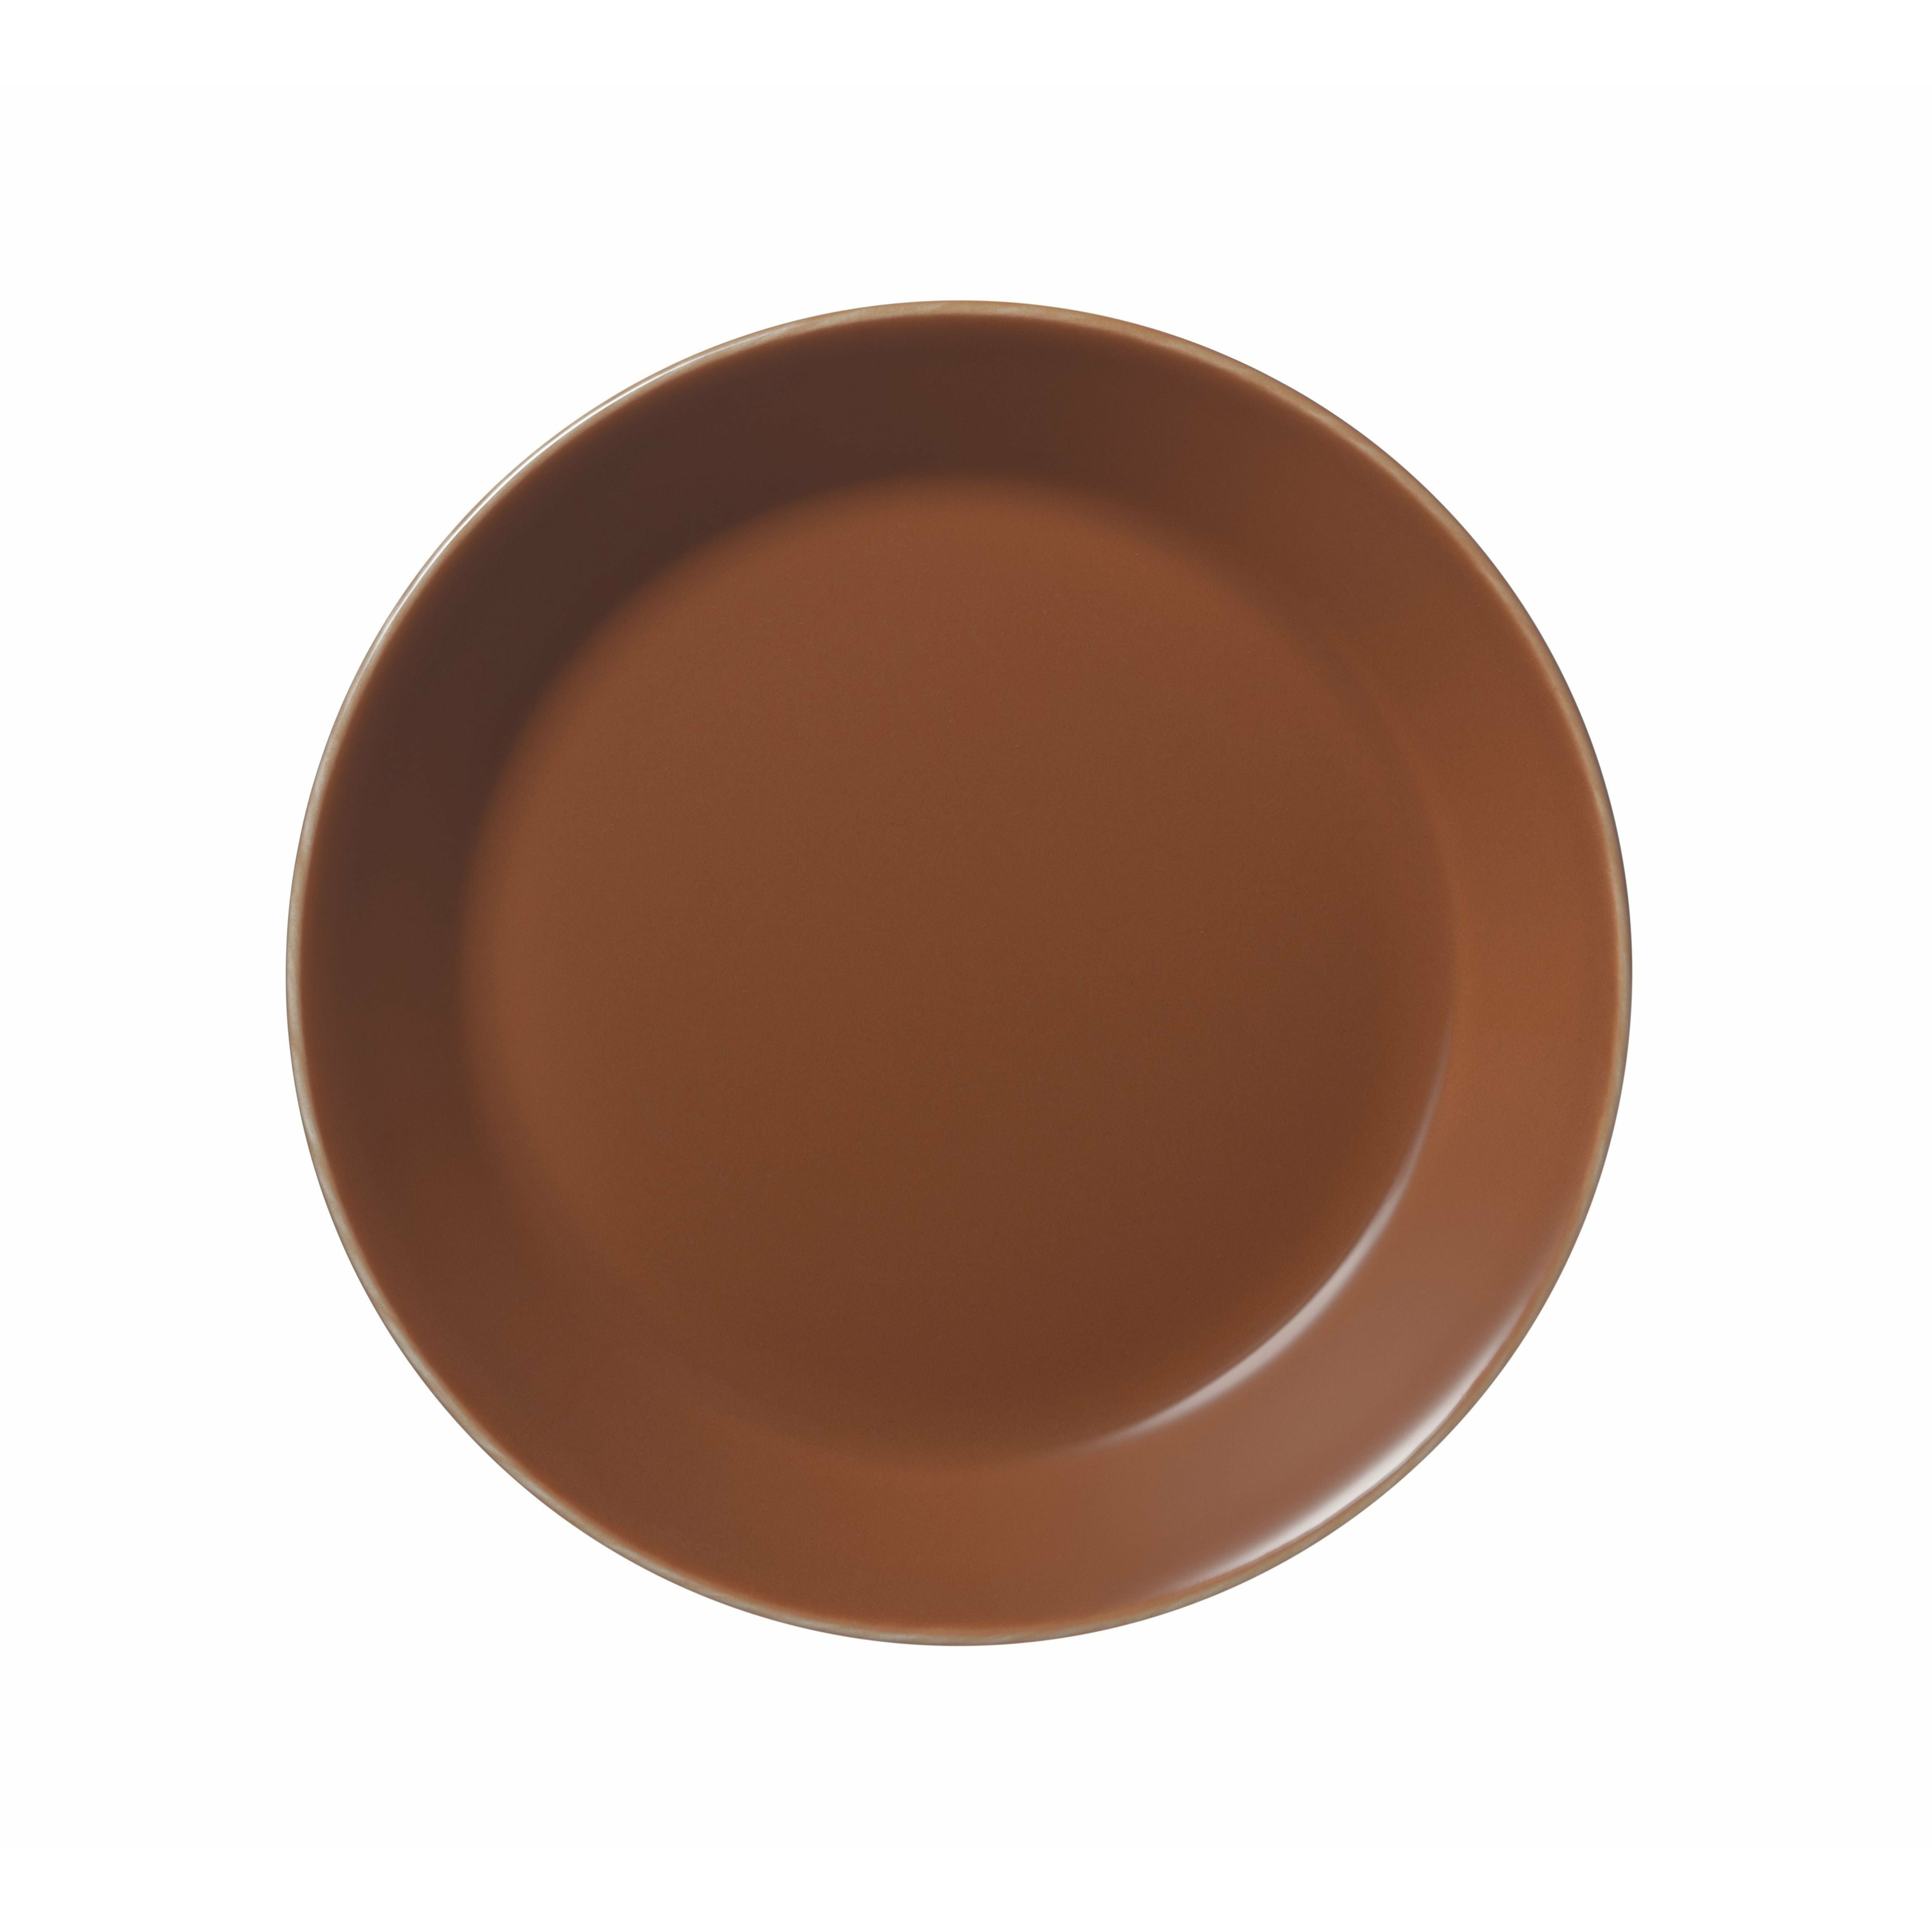 Iittala Plaque teema 17cm, brun vintage